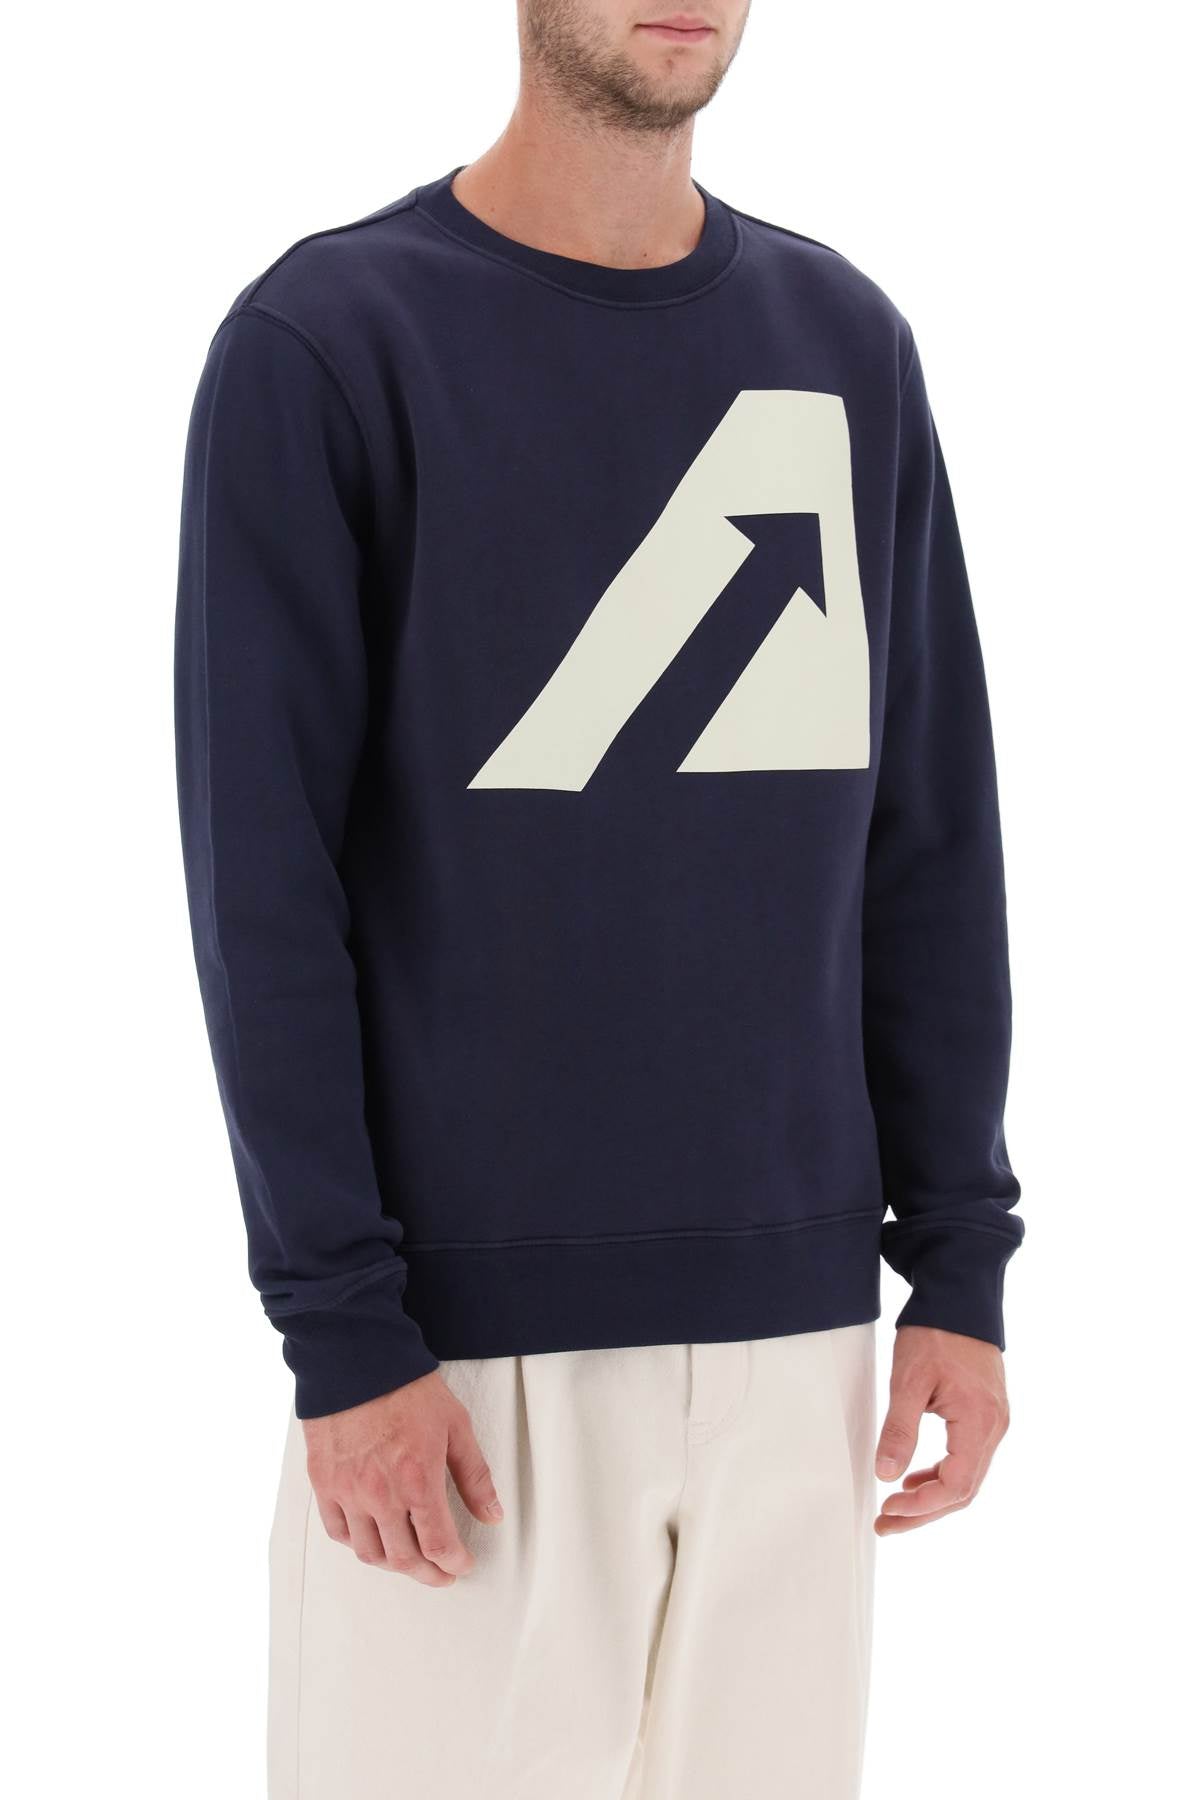 Autry crew-neck sweatshirt with logo print-1